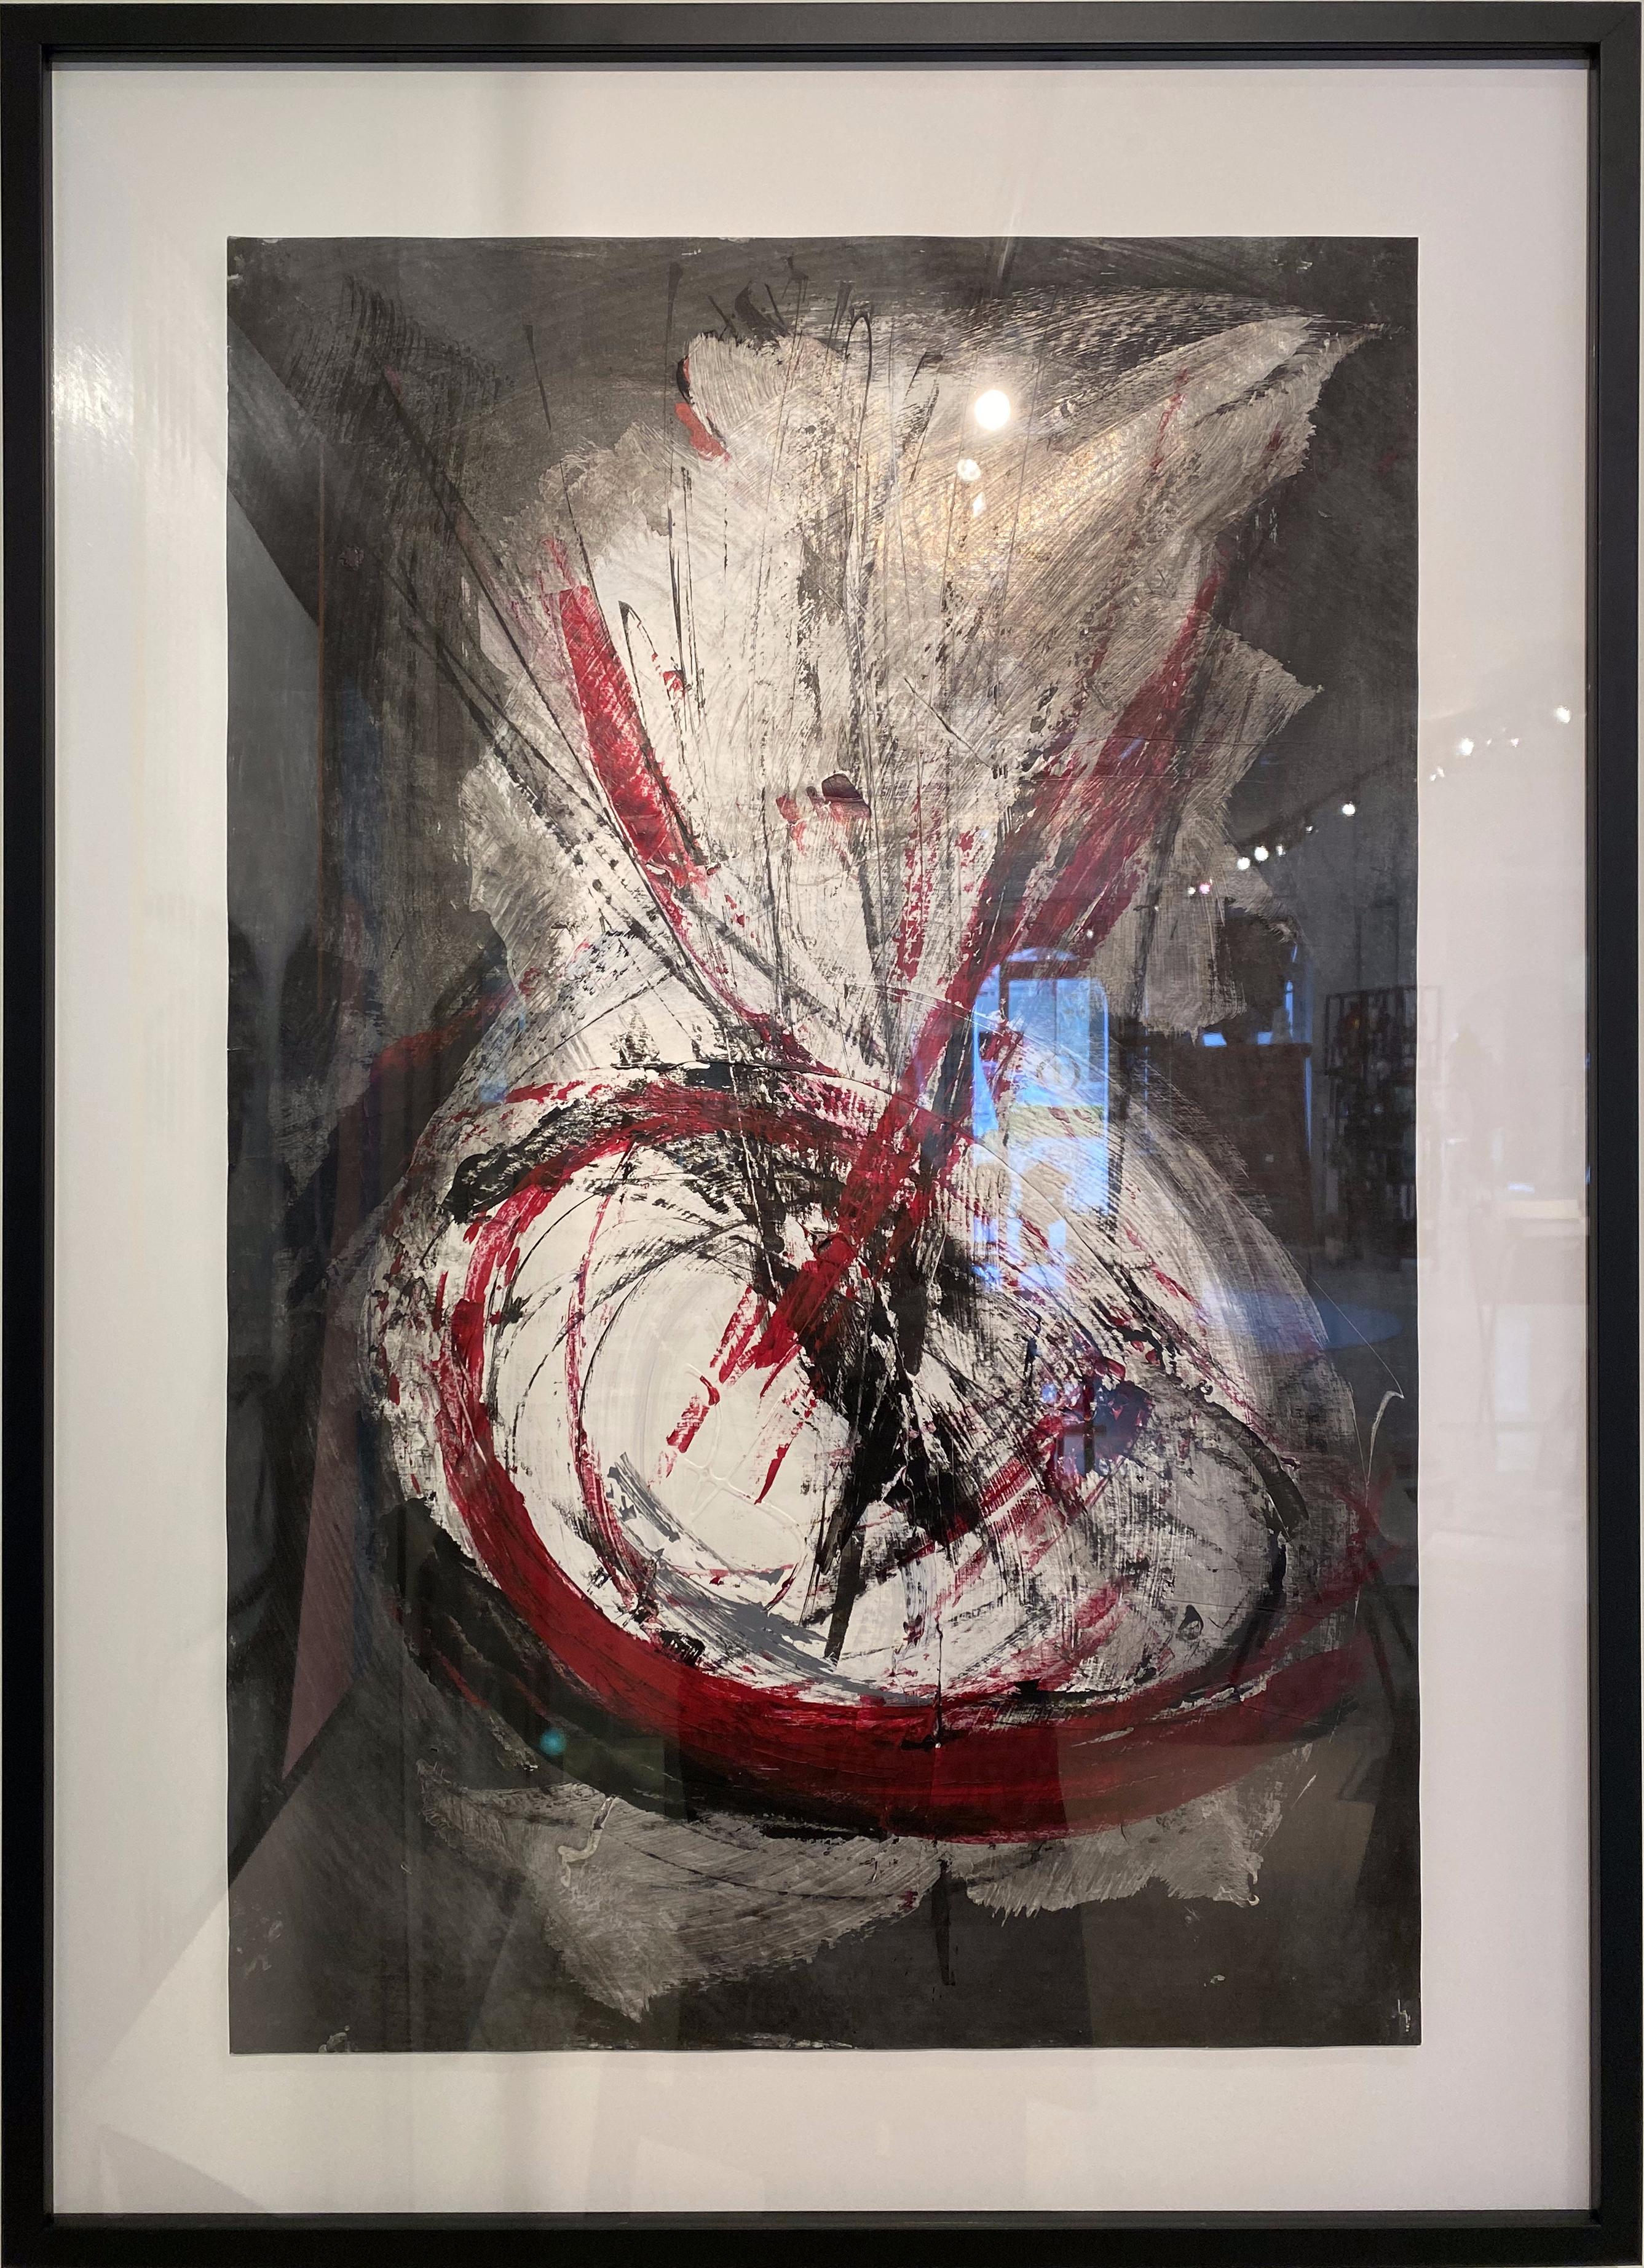 Cette peinture acrylique et encre sur papier de Marko Kratohvil est une explosion de couleurs rouges, noires, blanches et grises peintes avec des mouvements gestuels énergiques.  De grands cercles concentriques se forment à la base du tableau avec